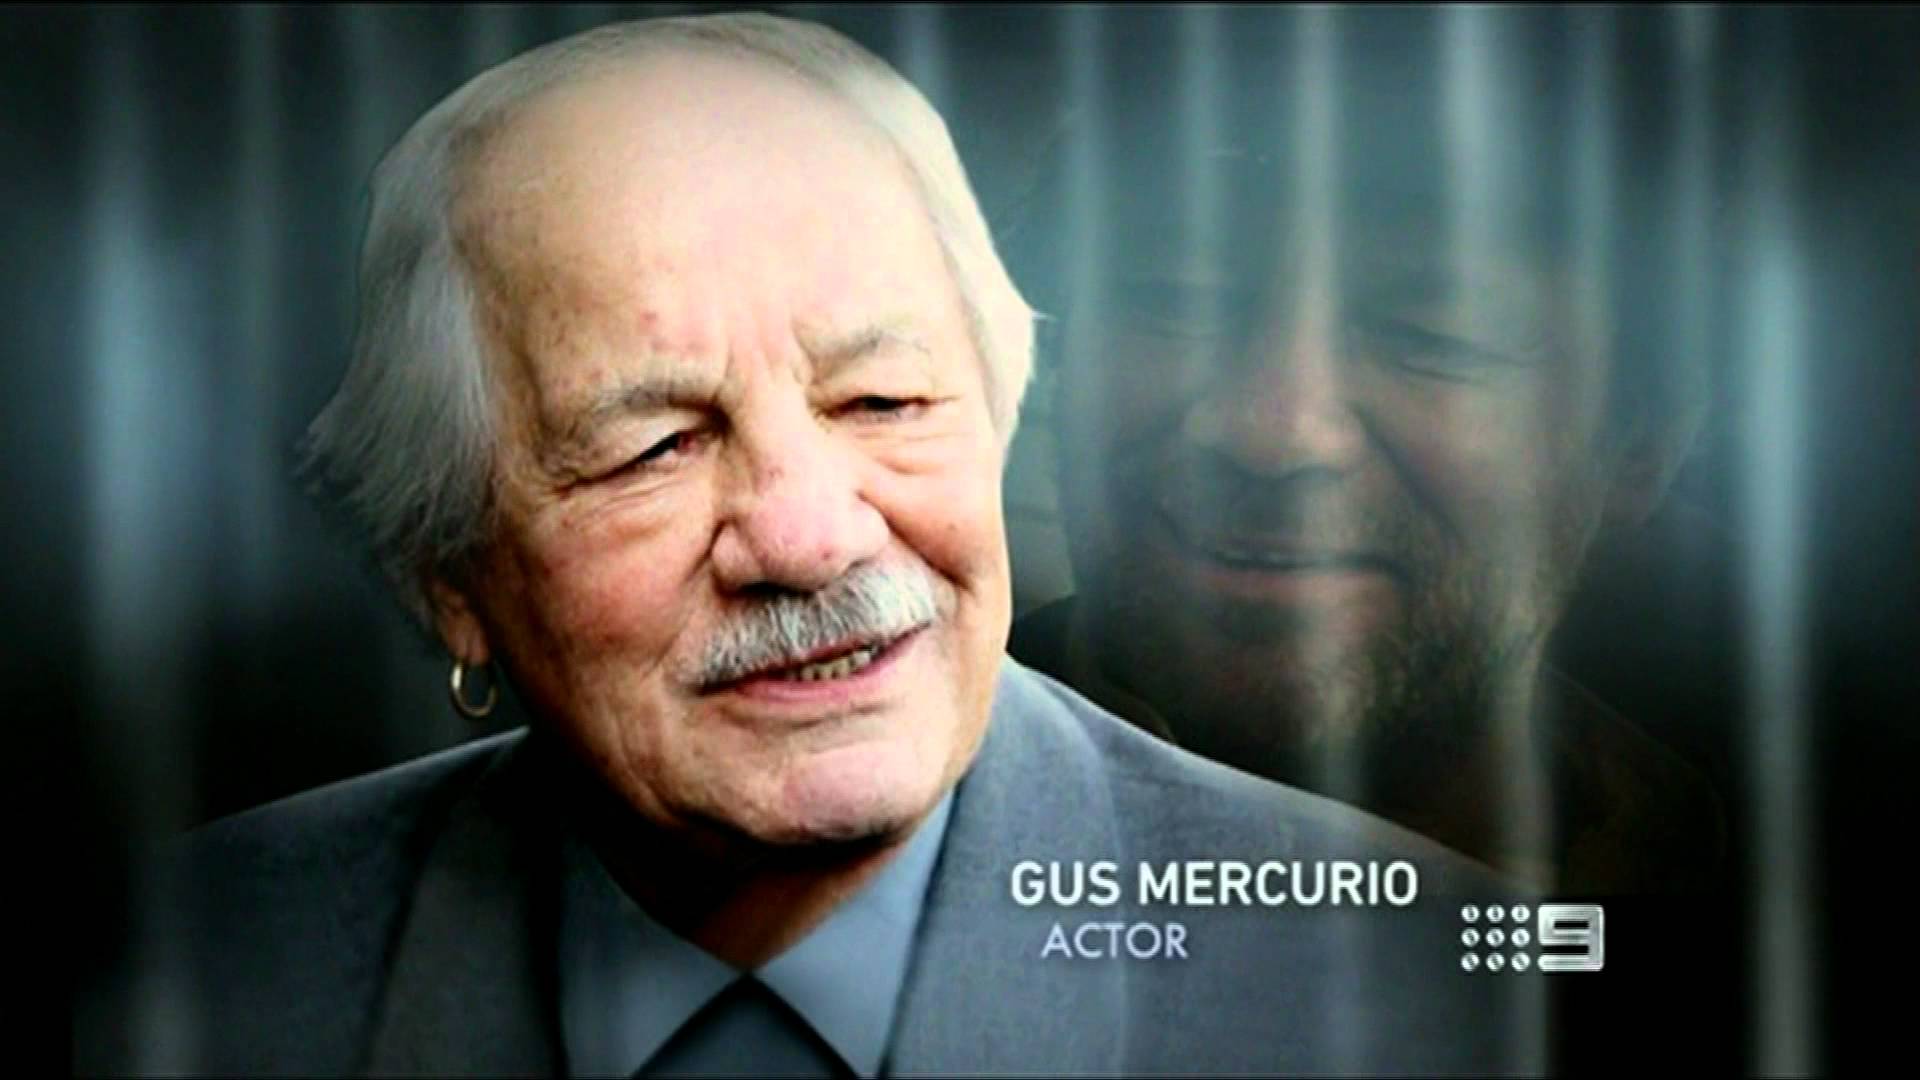 Gus Mercurio